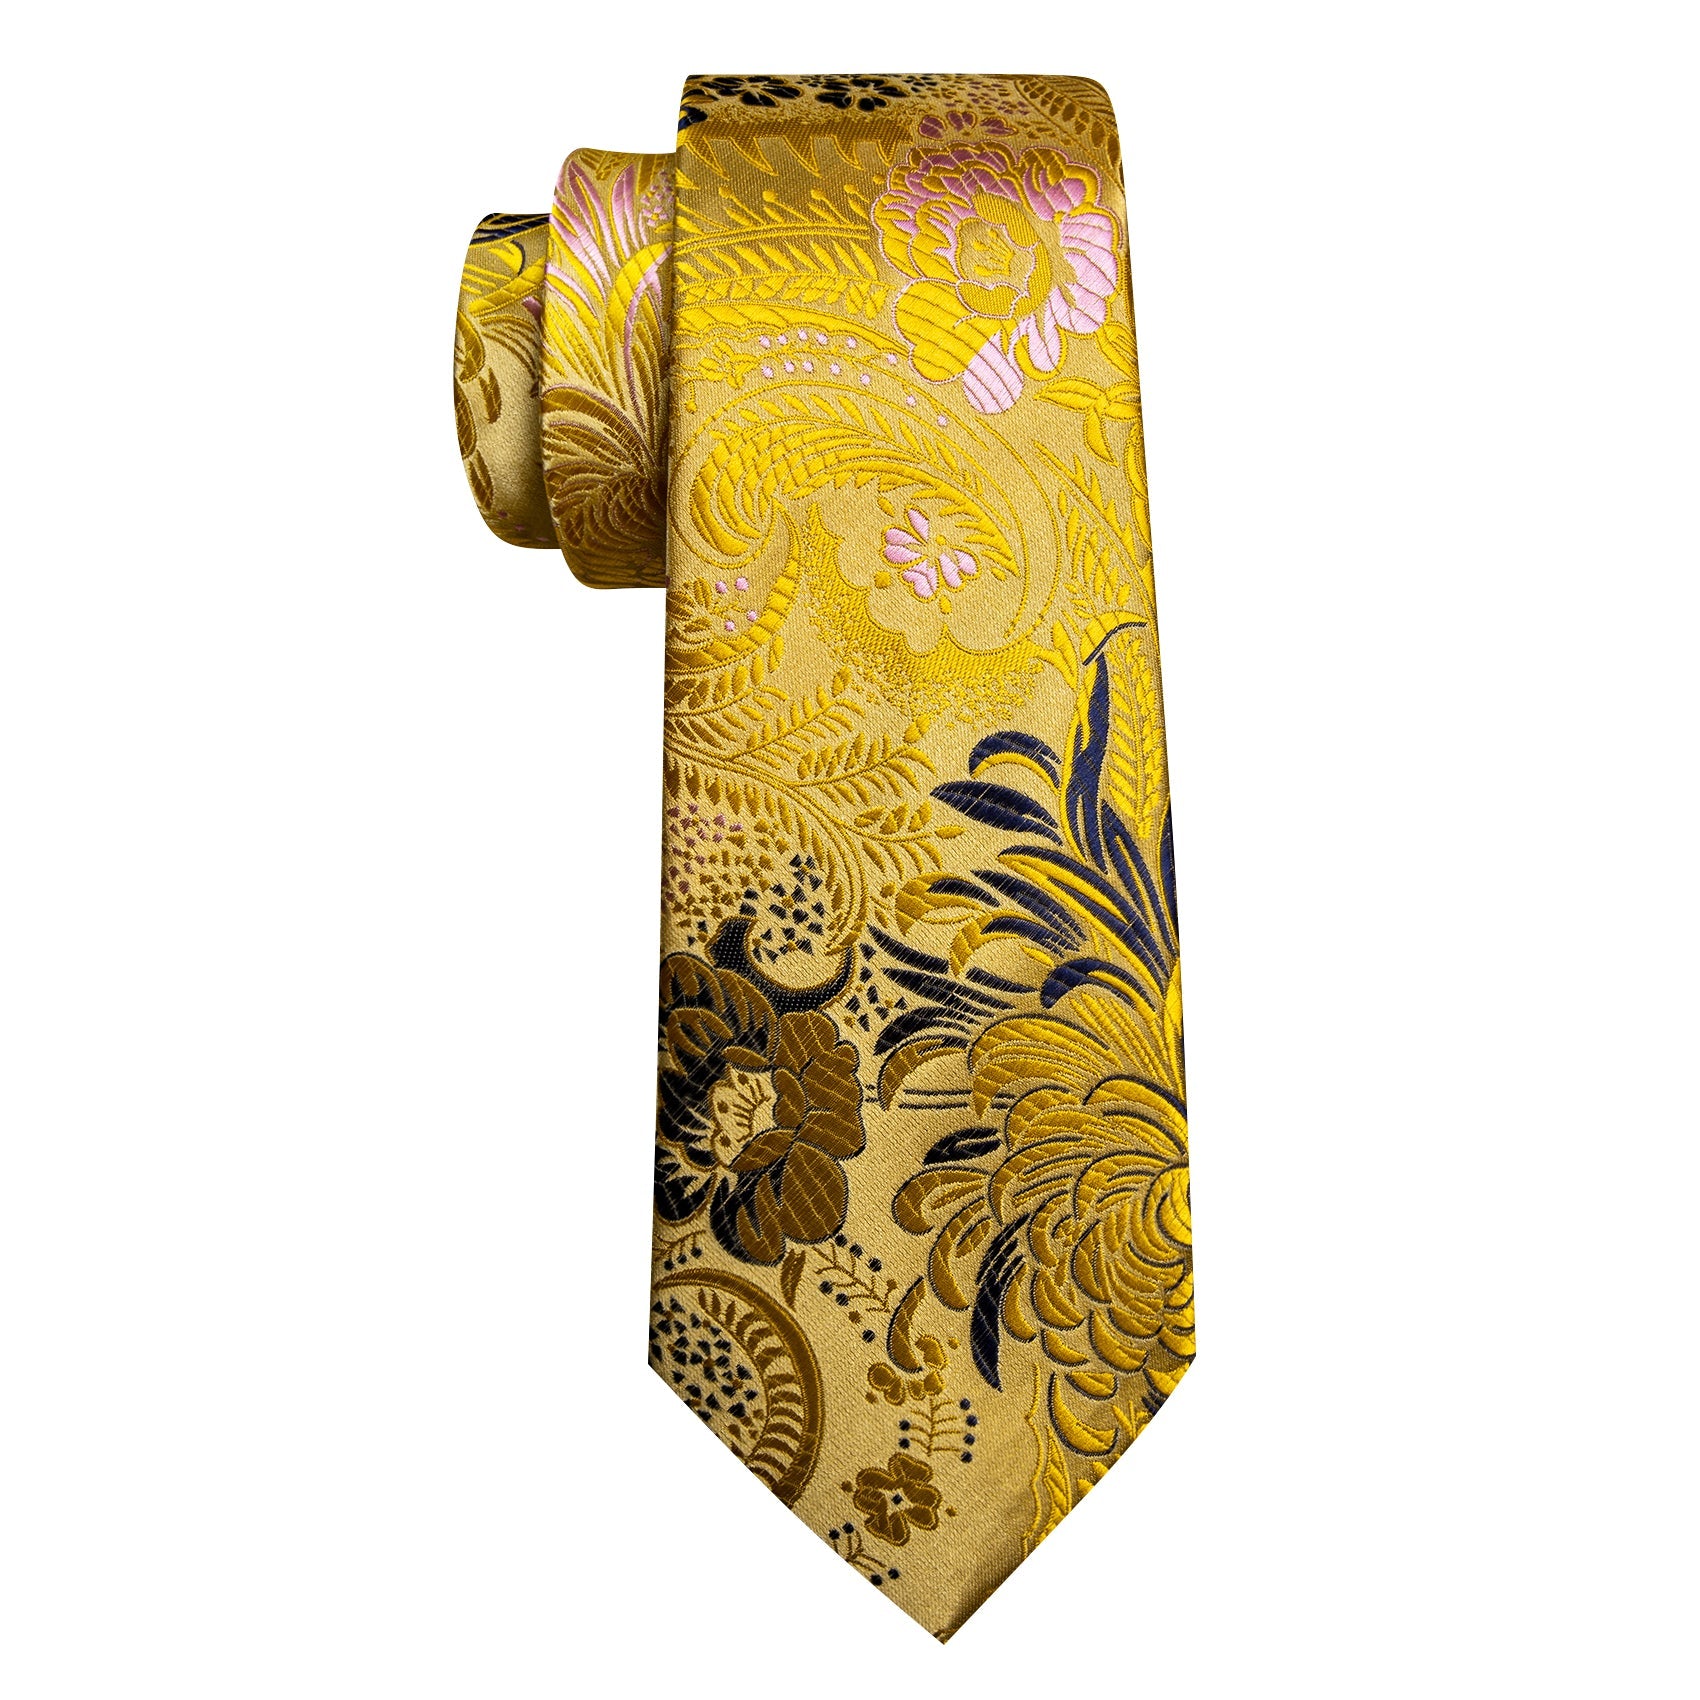 Gold Blue Floral Silk Tie Handkerchief Cufflinks Set